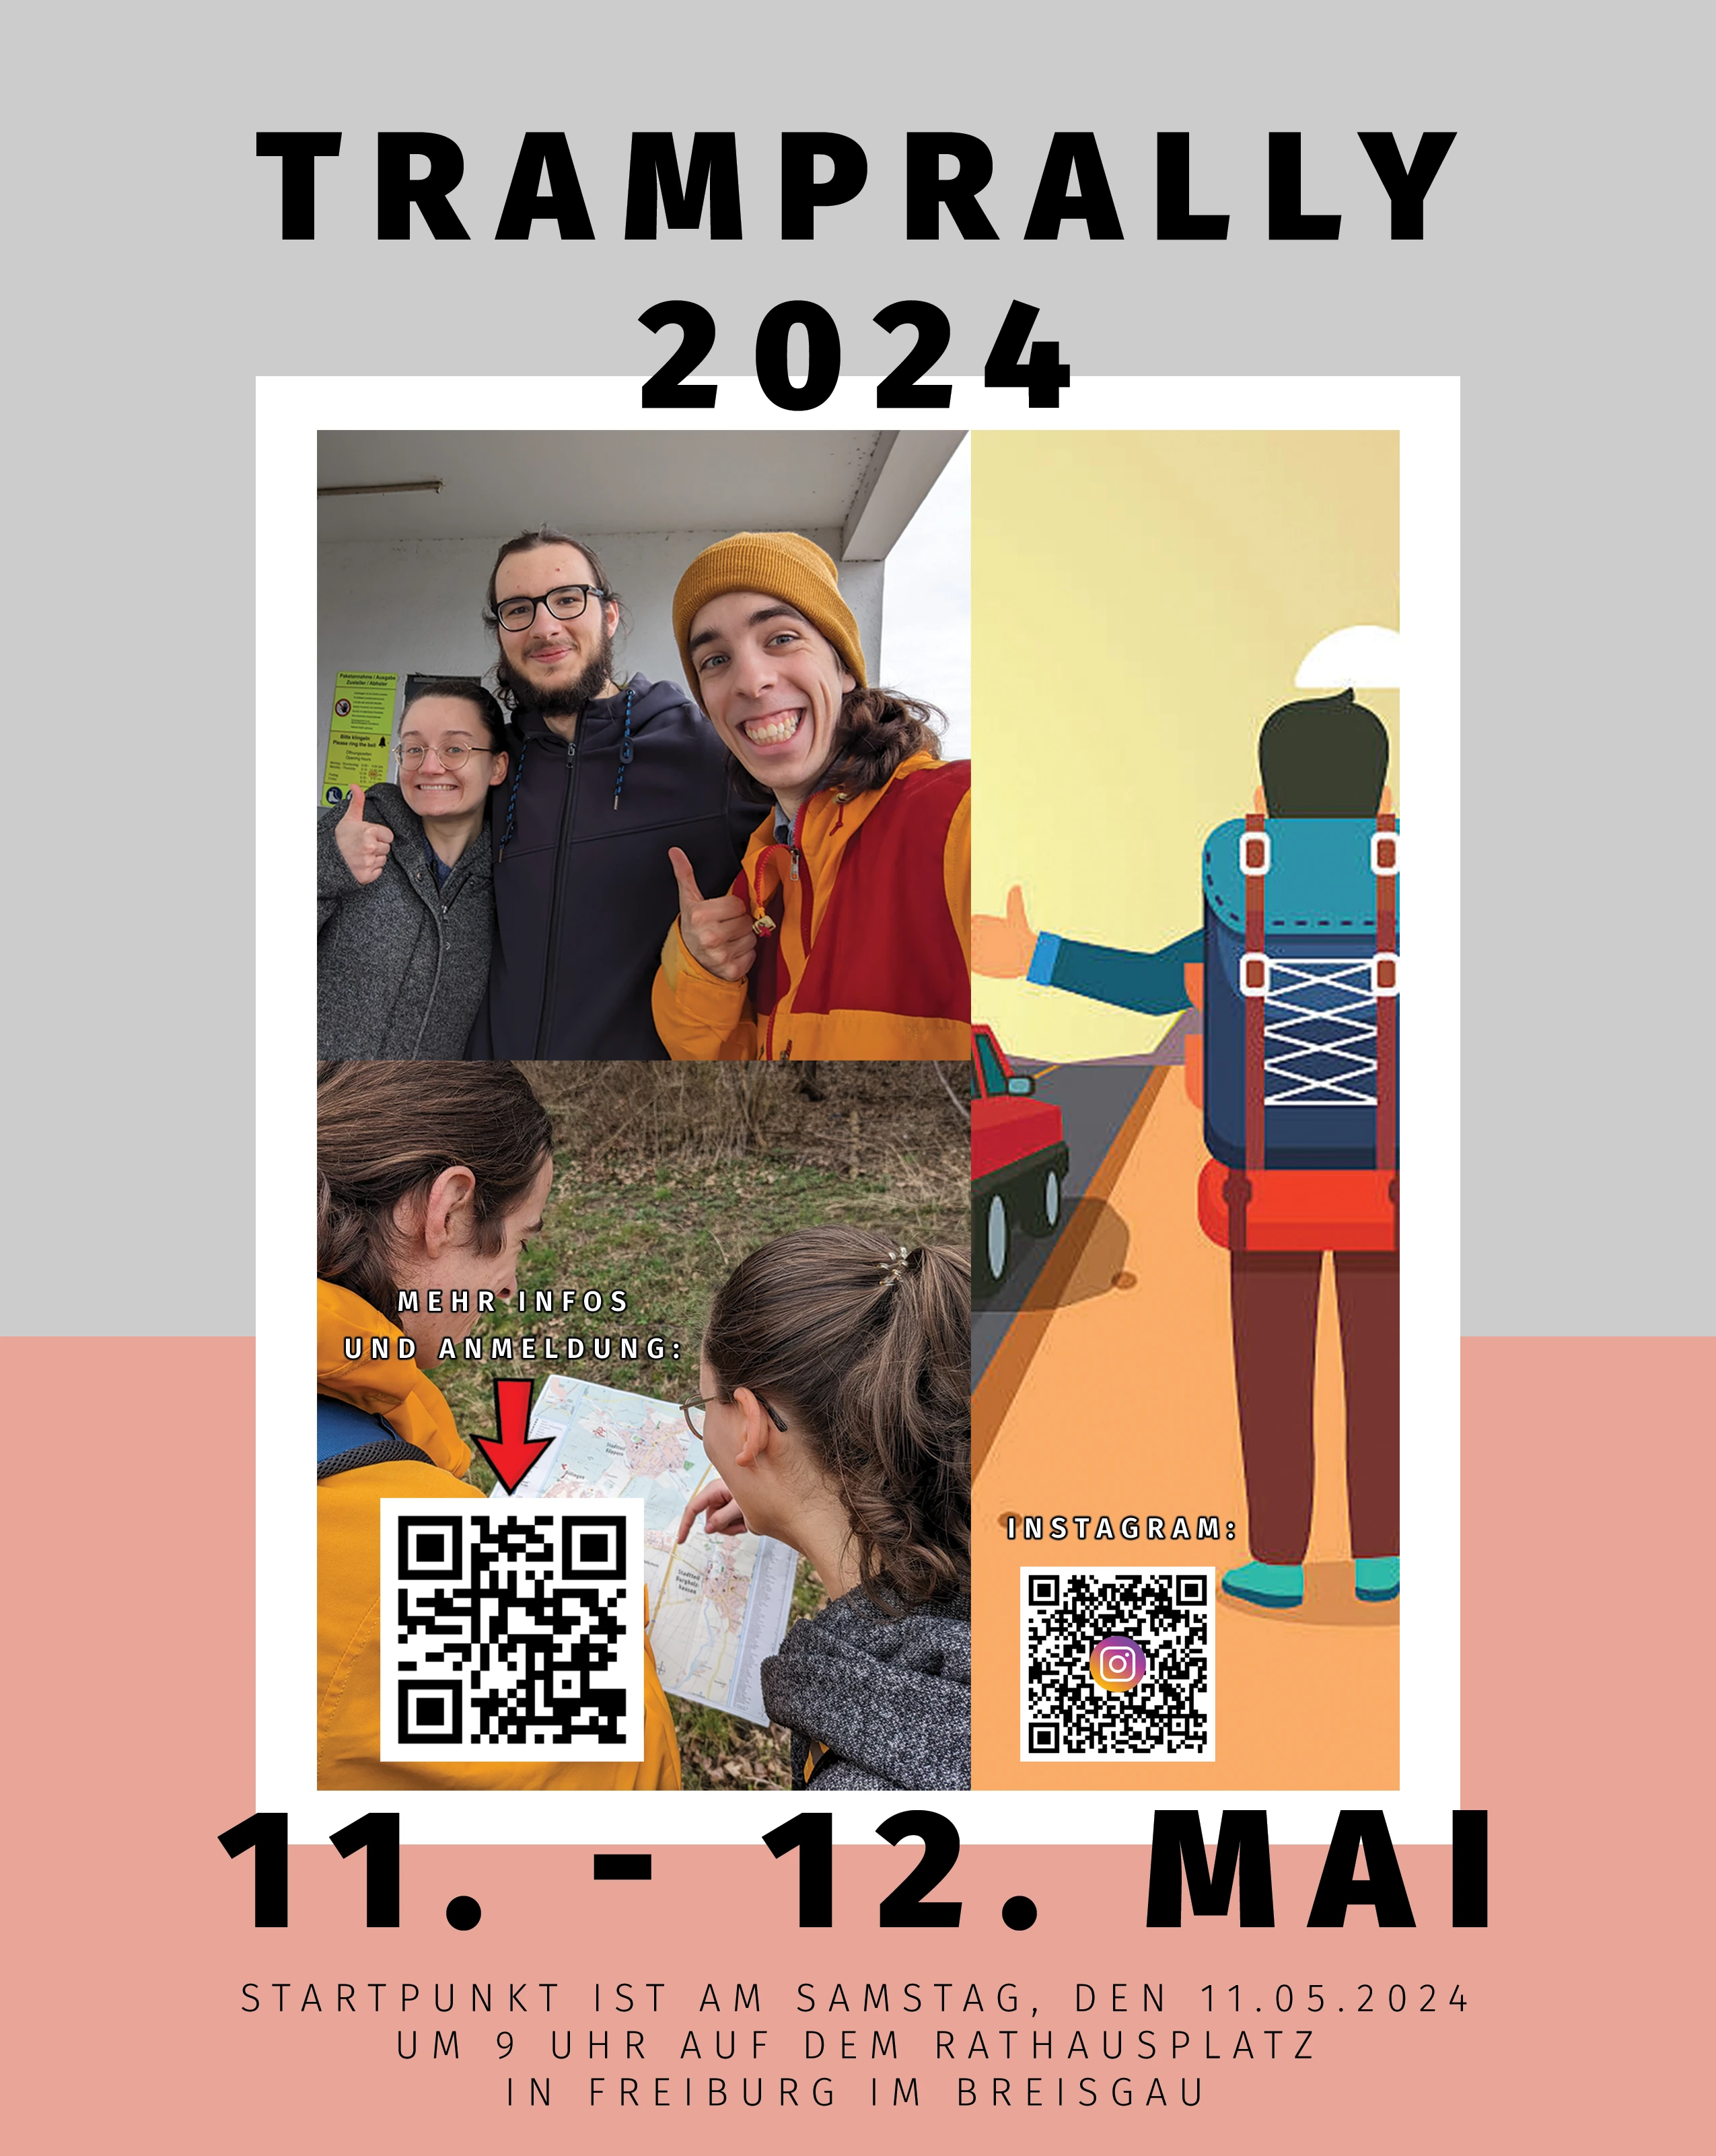 Das Poster der Tramprally 2024. Es zeigt QR-Codes zur Anmeldung auf www.tramprally.de und zum Instagram-Account hitchhiking.abgefahren sowie die Aufschrift "Startpunkt ist am Samstag, den 11.05.2024 um 9 Uhr auf dem Rathausplatz in Freiburg im Breisgau."